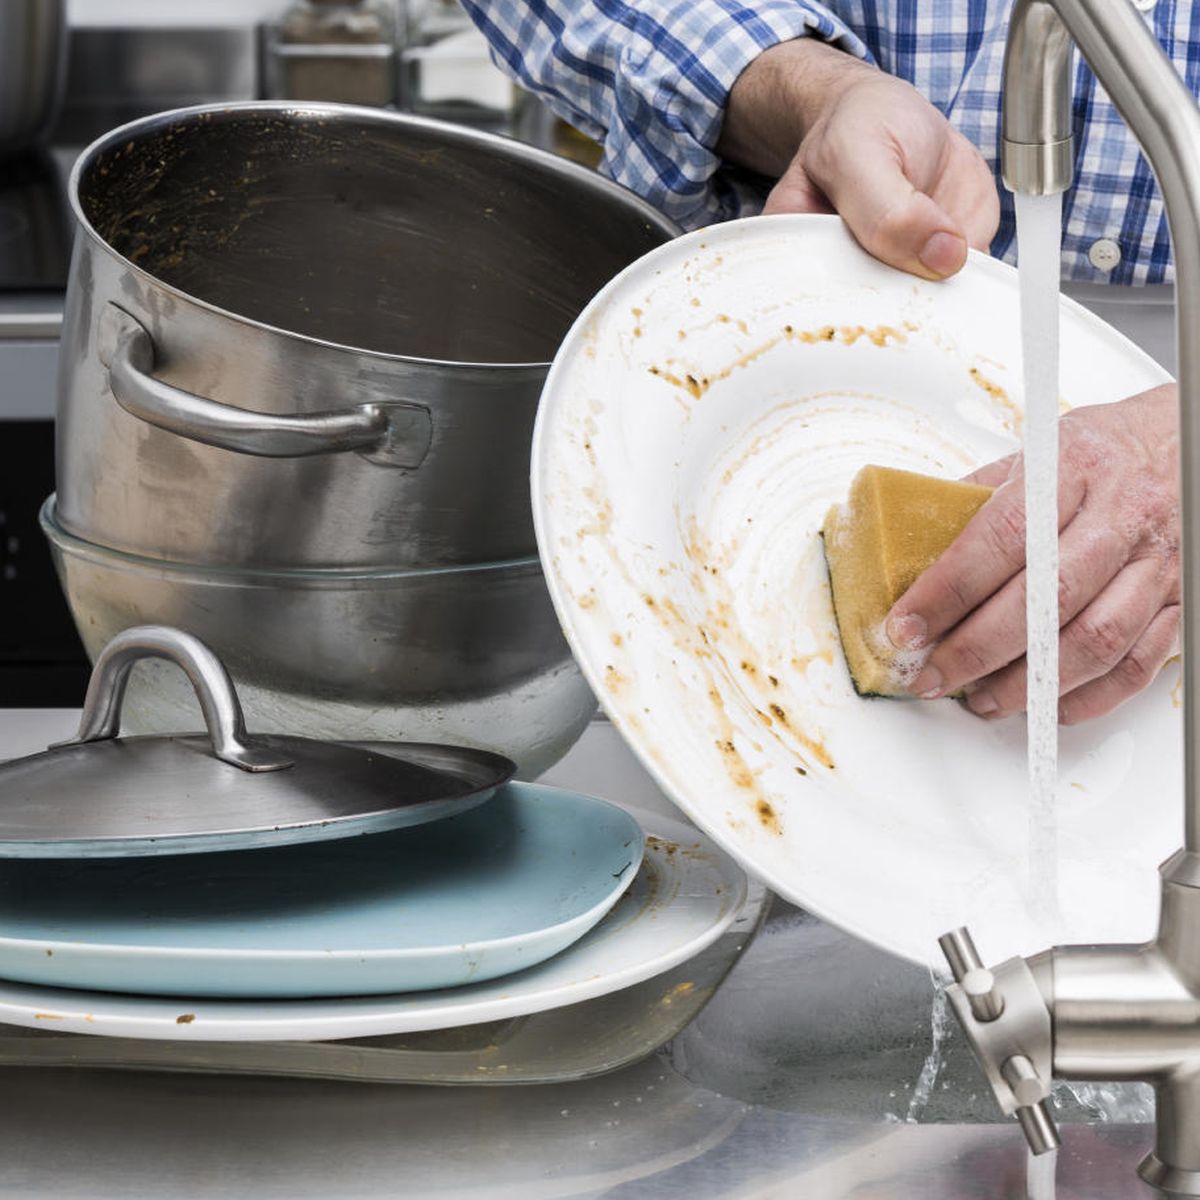 El peligro ignorado del estropajo con el que friegas los platos